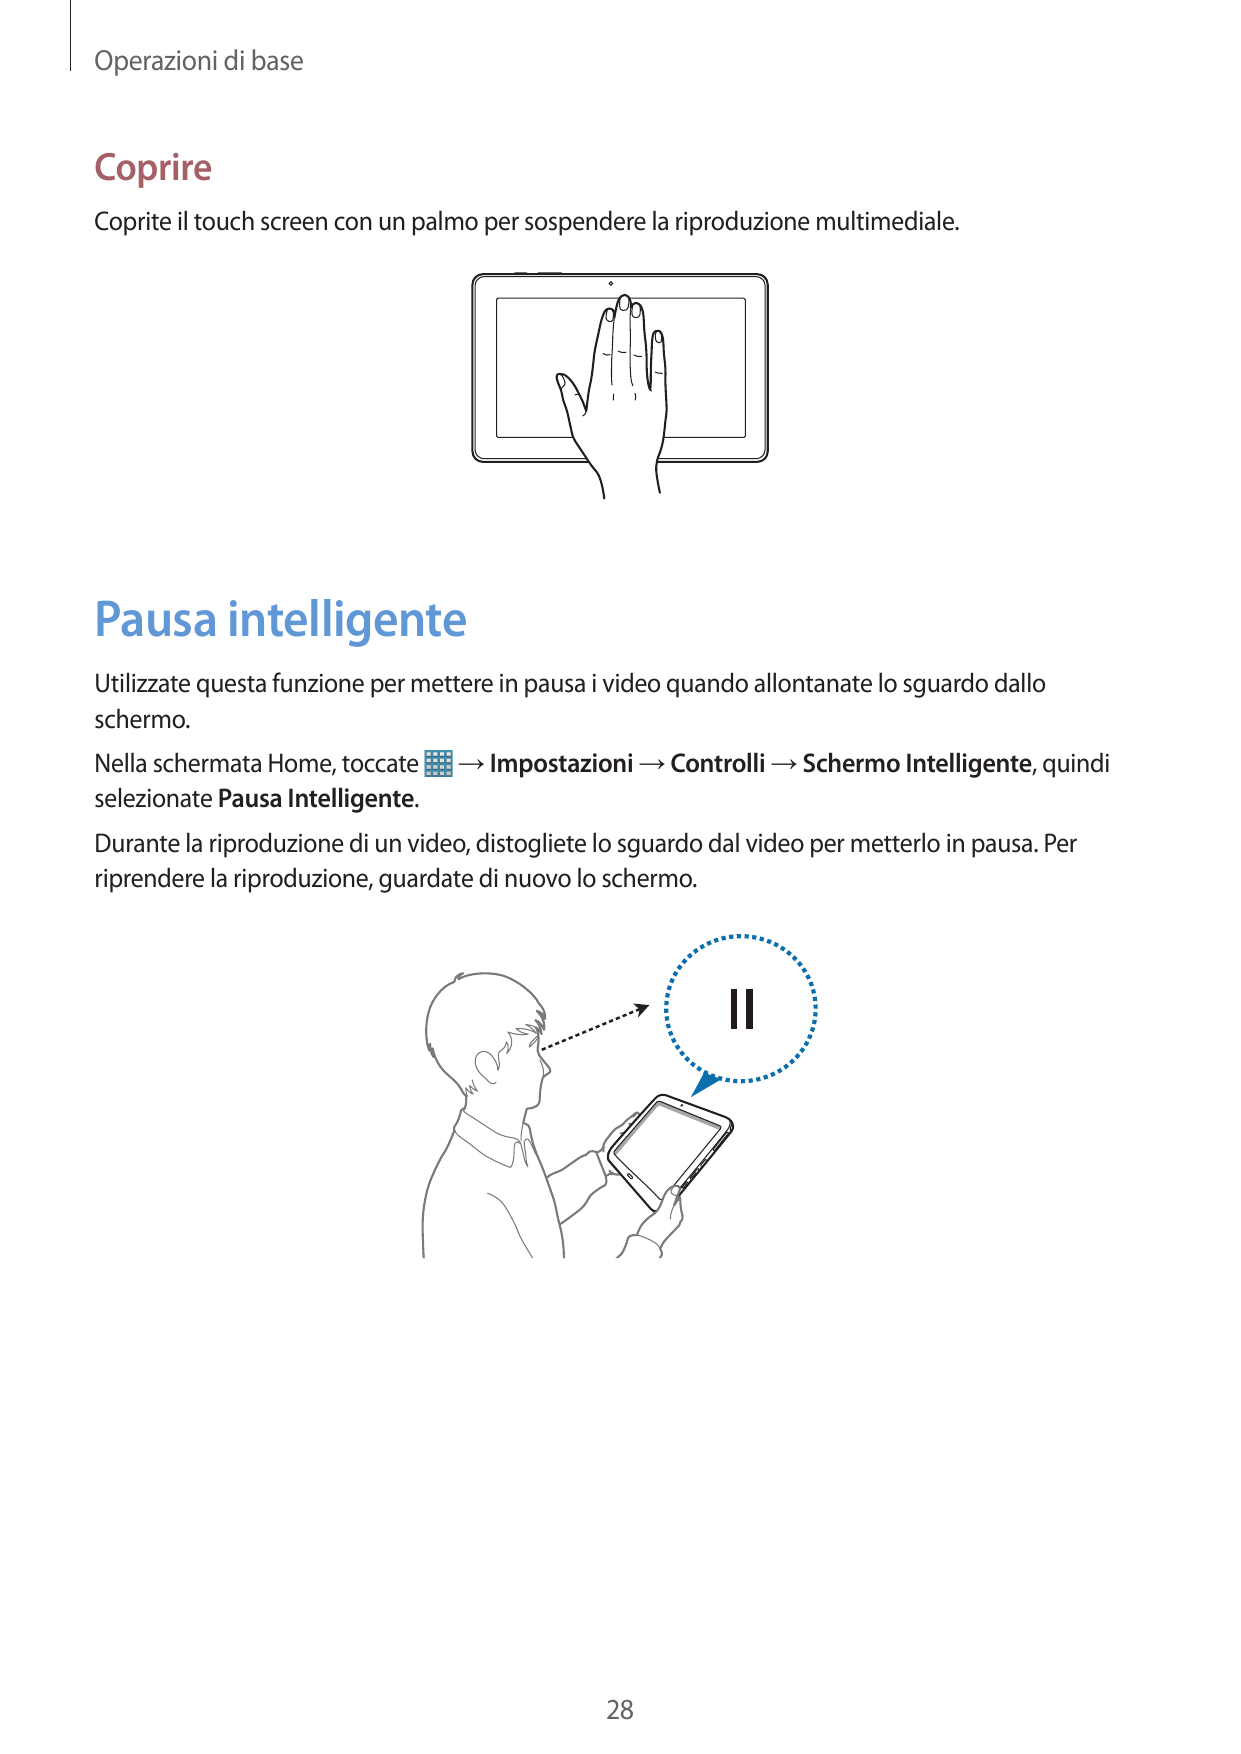 Operazioni di baseCoprireCoprite il touch screen con un palmo per sospendere la riproduzione multimediale.Pausa intelligenteUtil